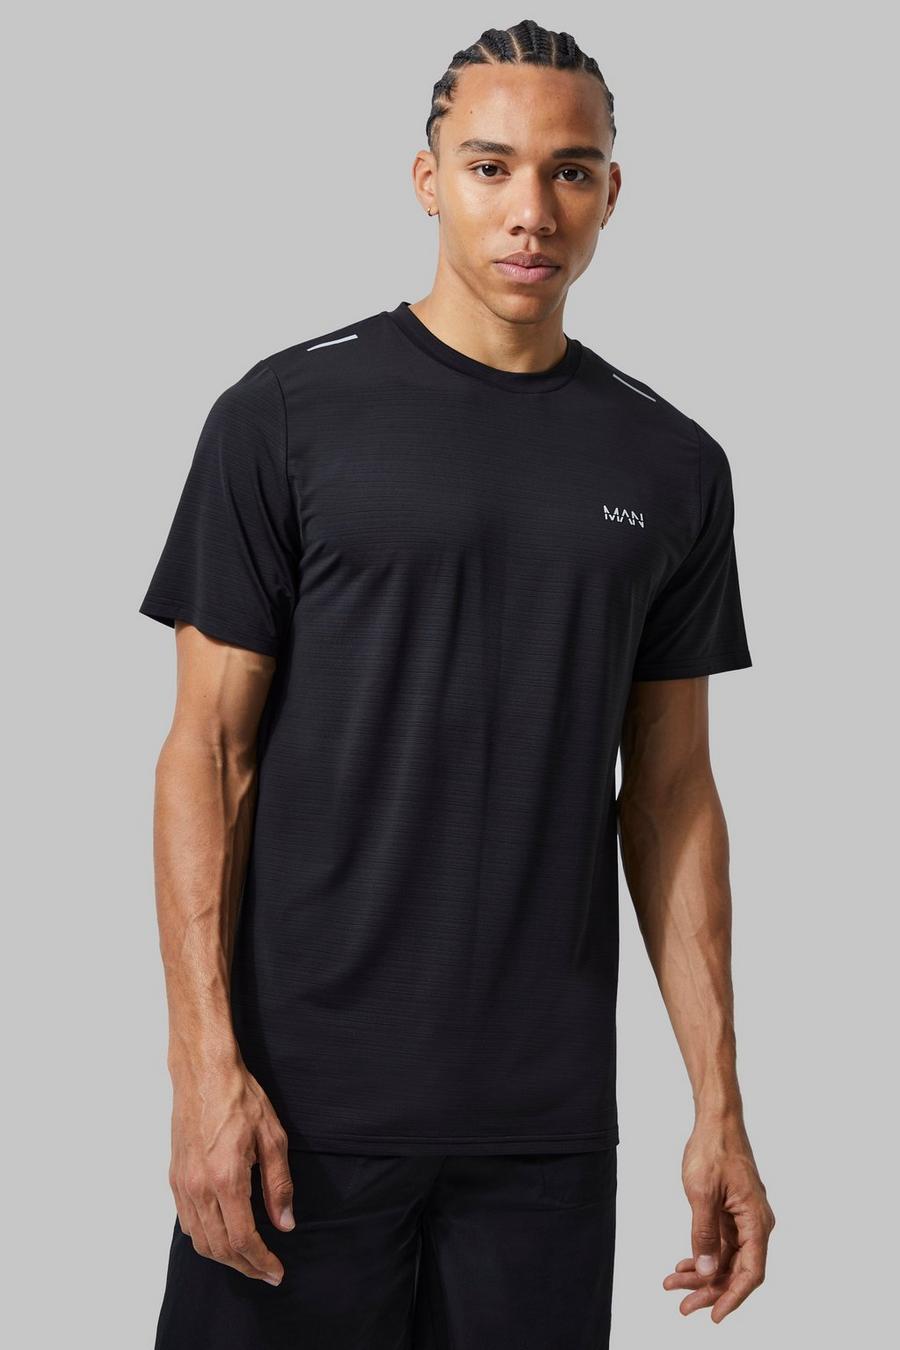 Black noir Tall Man Active Lightweight Performance T-shirt